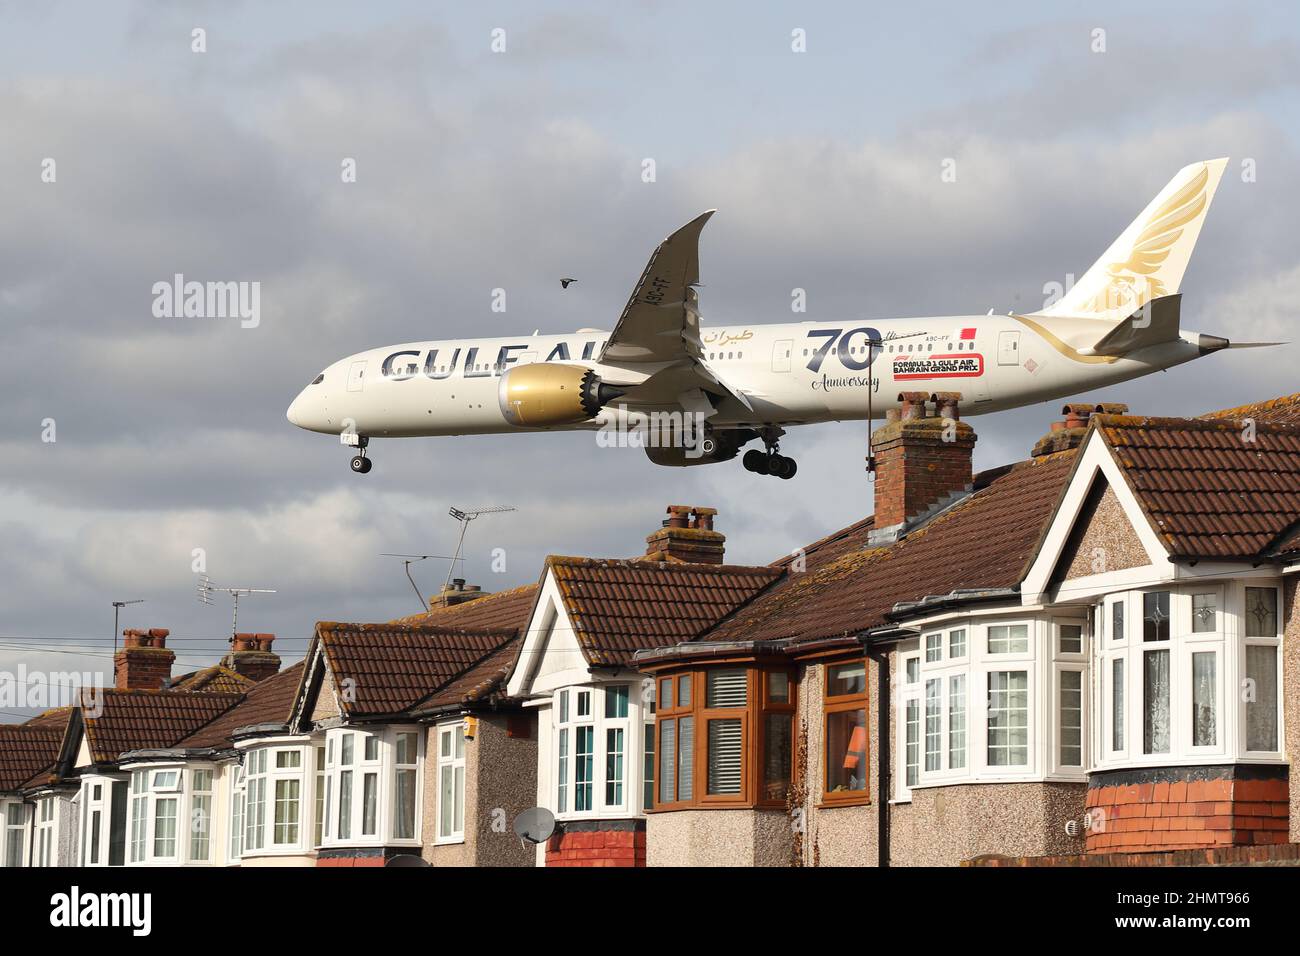 Un Boeing 787-9 Dreamliner de Gulf Air s'approche de l'aéroport d'Heathrow en survolant les toits de maisons de Myrtle Avenue, Londres, Royaume-Uni Banque D'Images